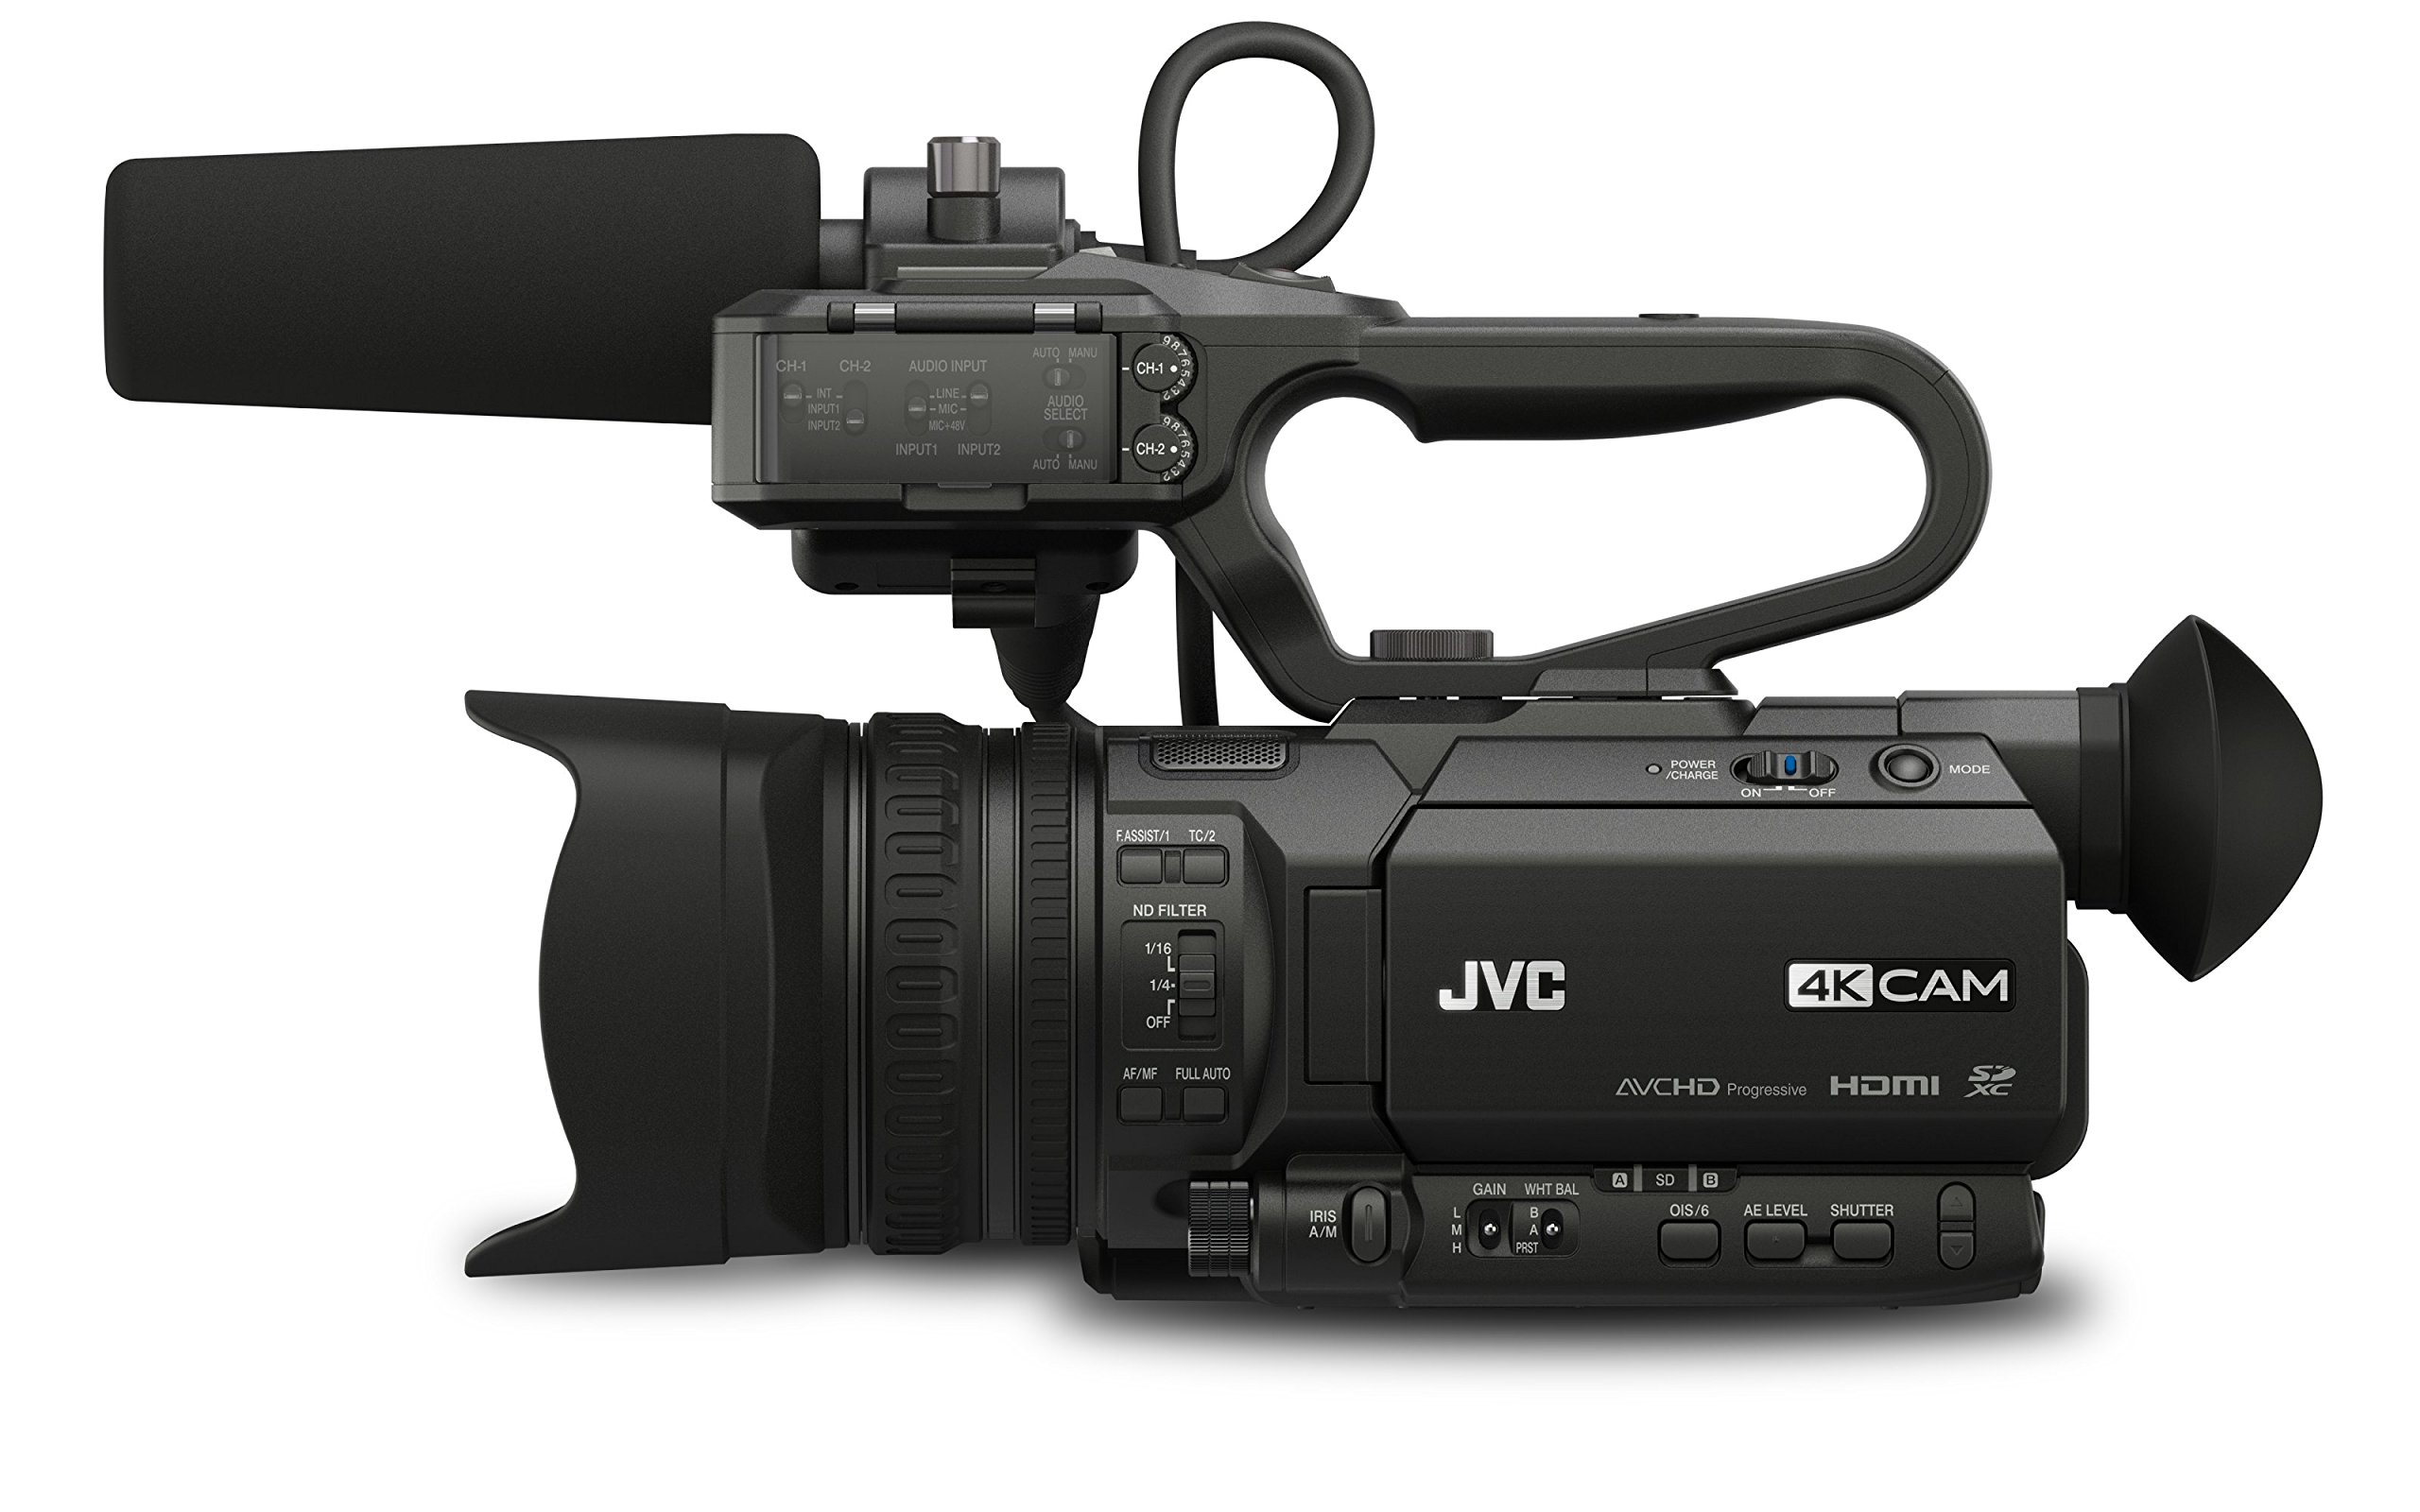 JVC GY-HM180U Camcorder, 3.5